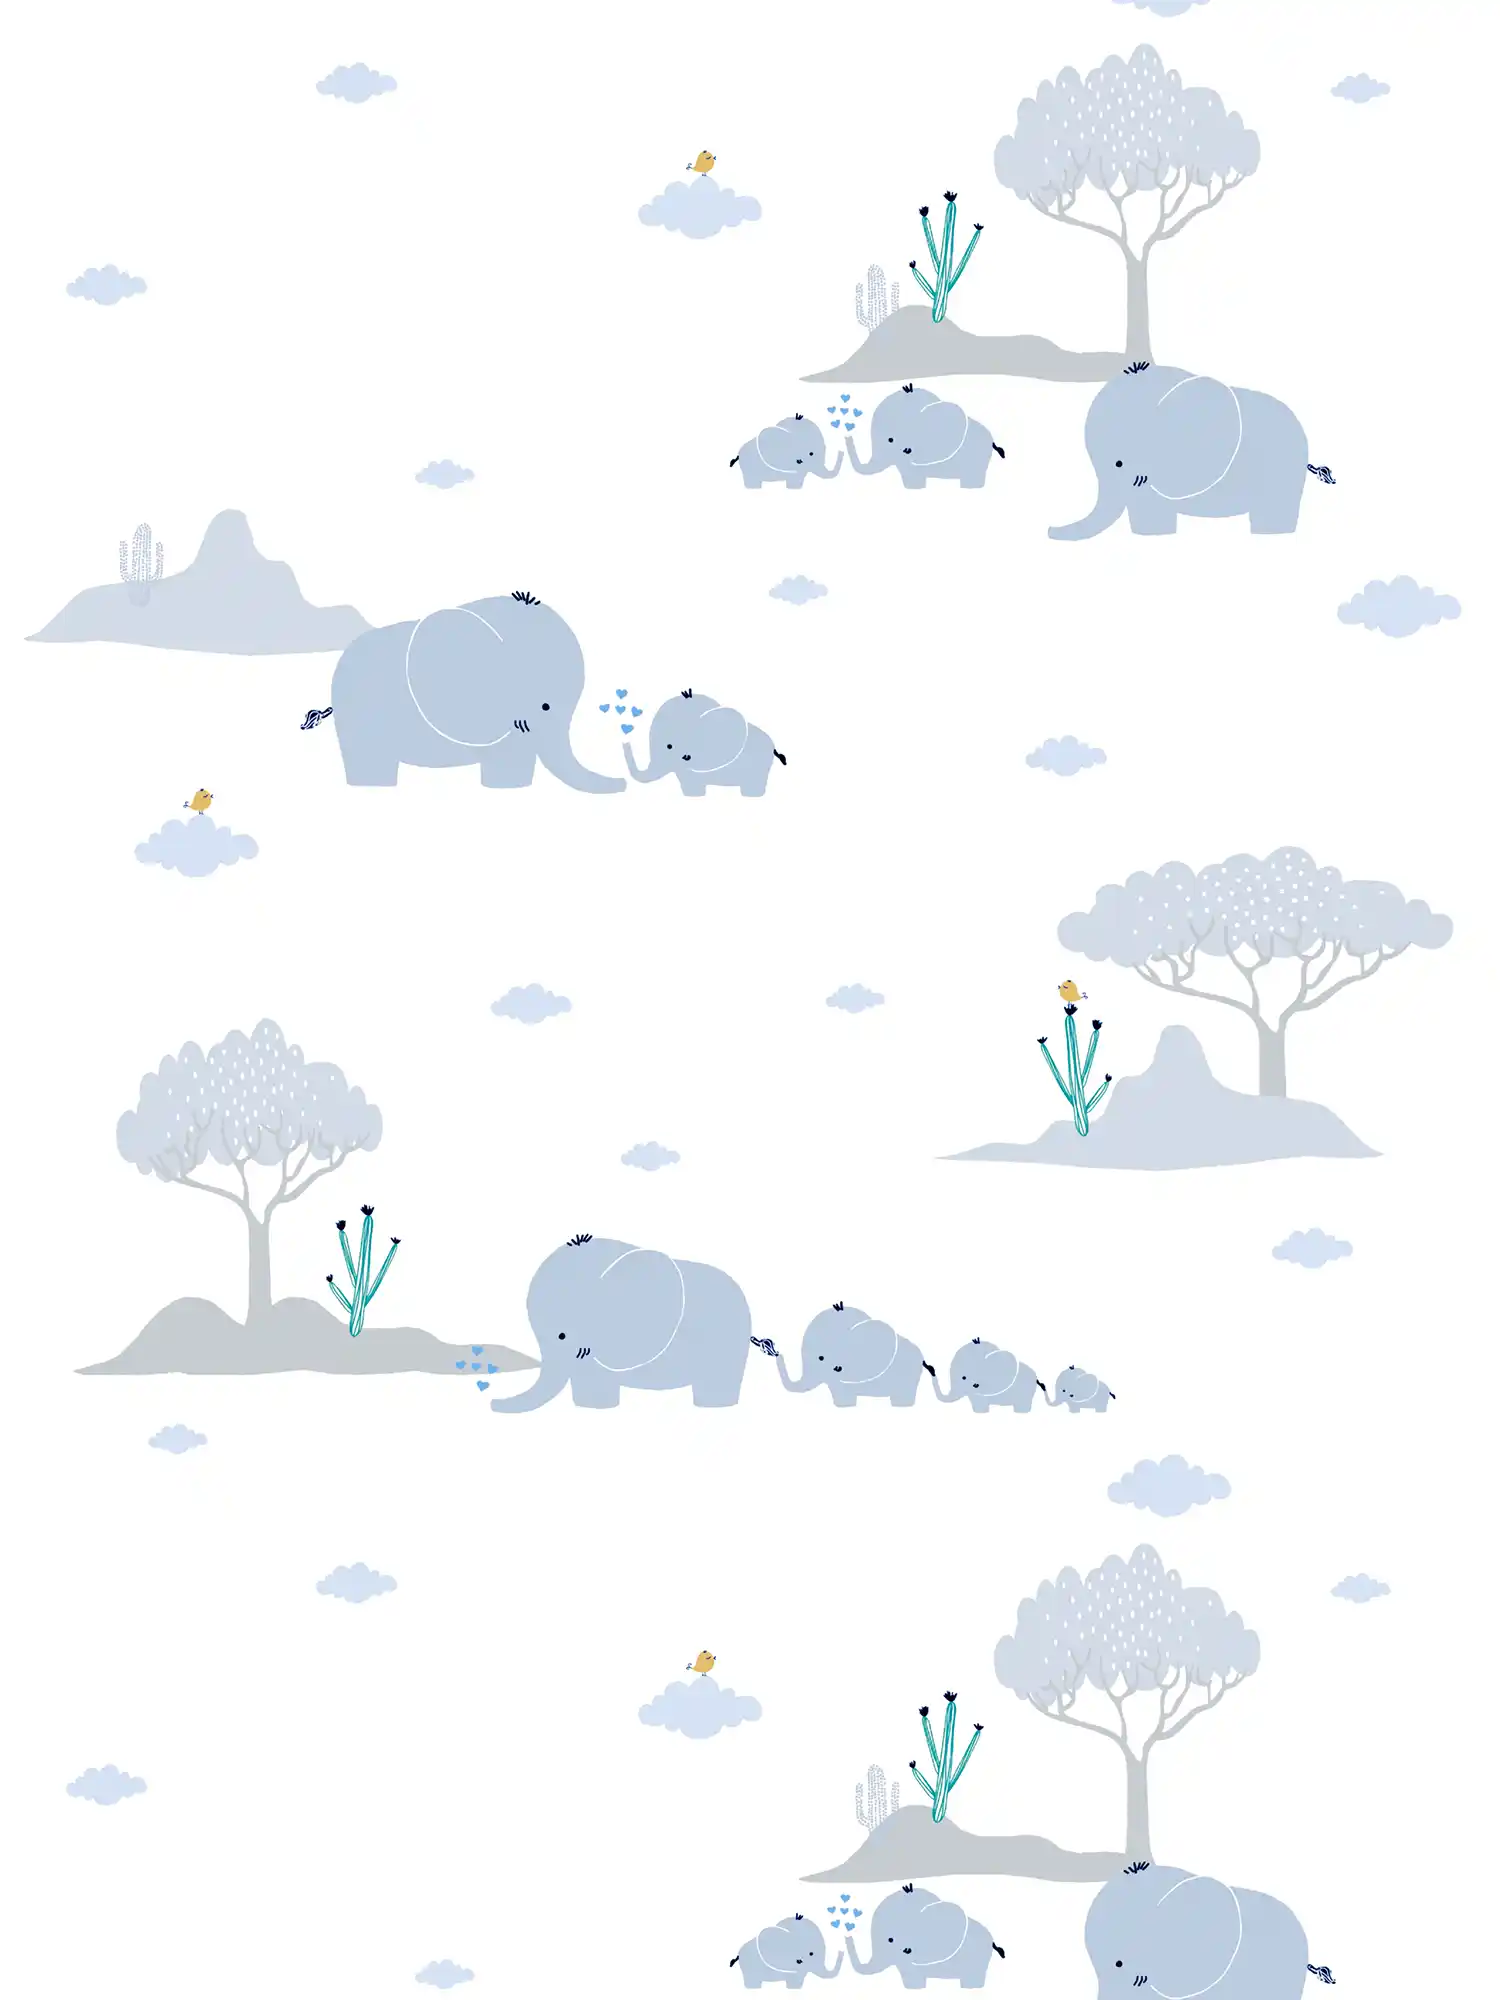         Tapete Kinderzimmer Jungen Elefanten & Landschaft – Blau, Grau, Weiß
    